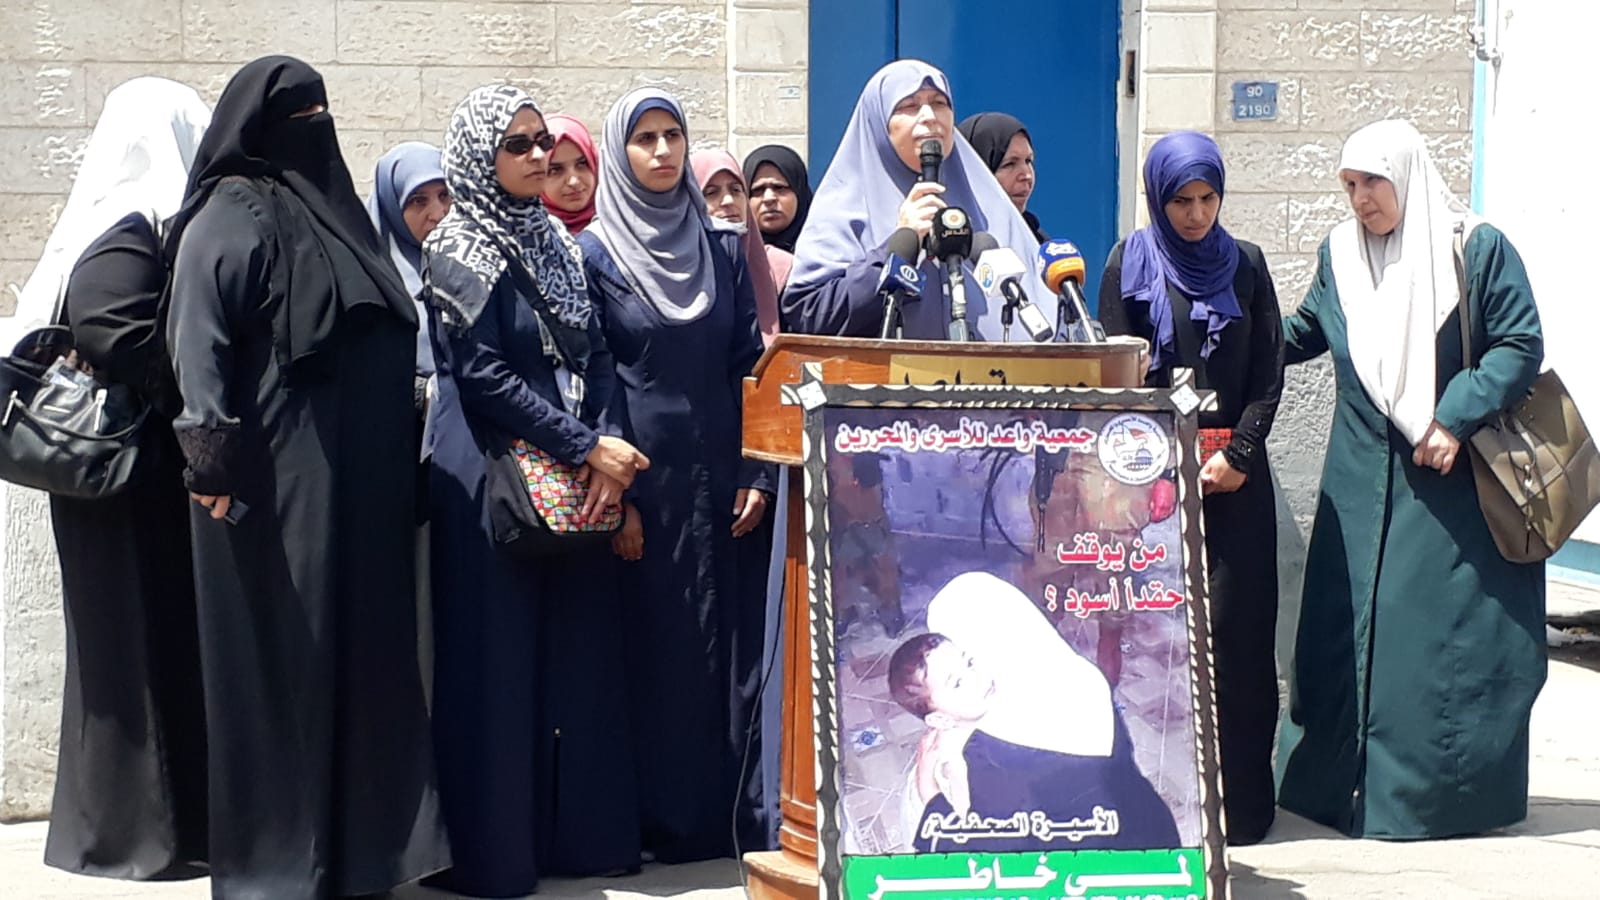 الحركة النسائية بغزة تنظم وقفة تضامنية مع الكاتبة لمى خاطر